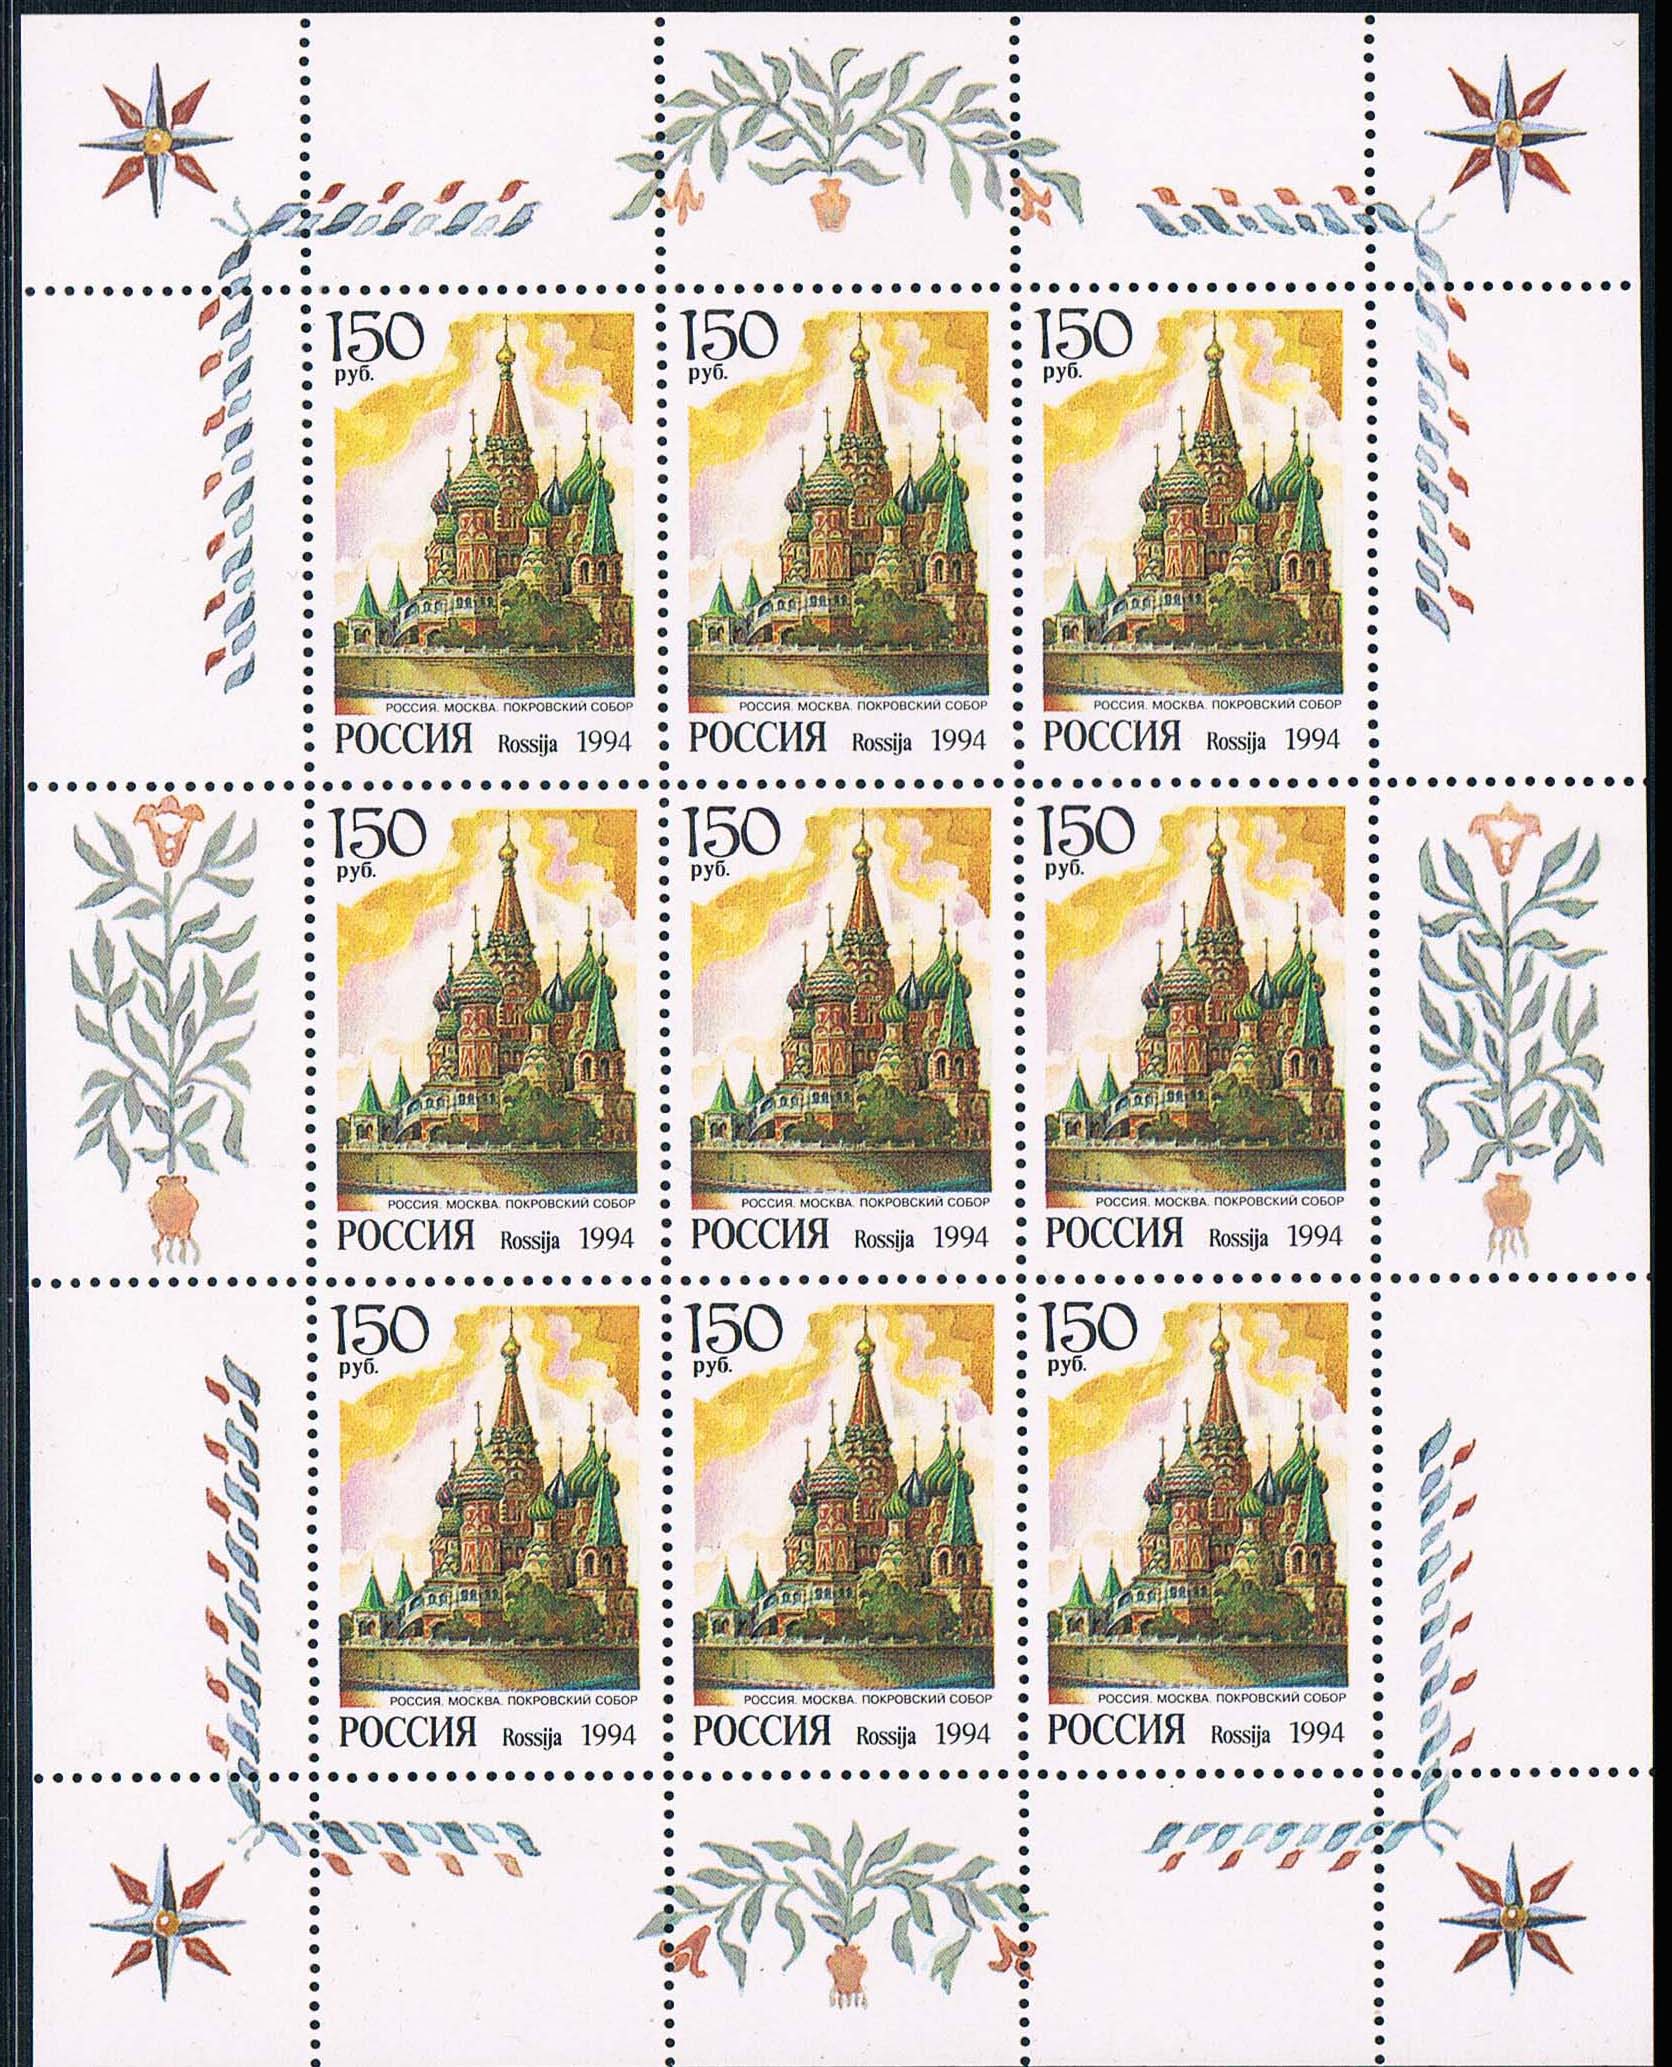 俄罗斯邮票(纪念列宁诞辰150周年)